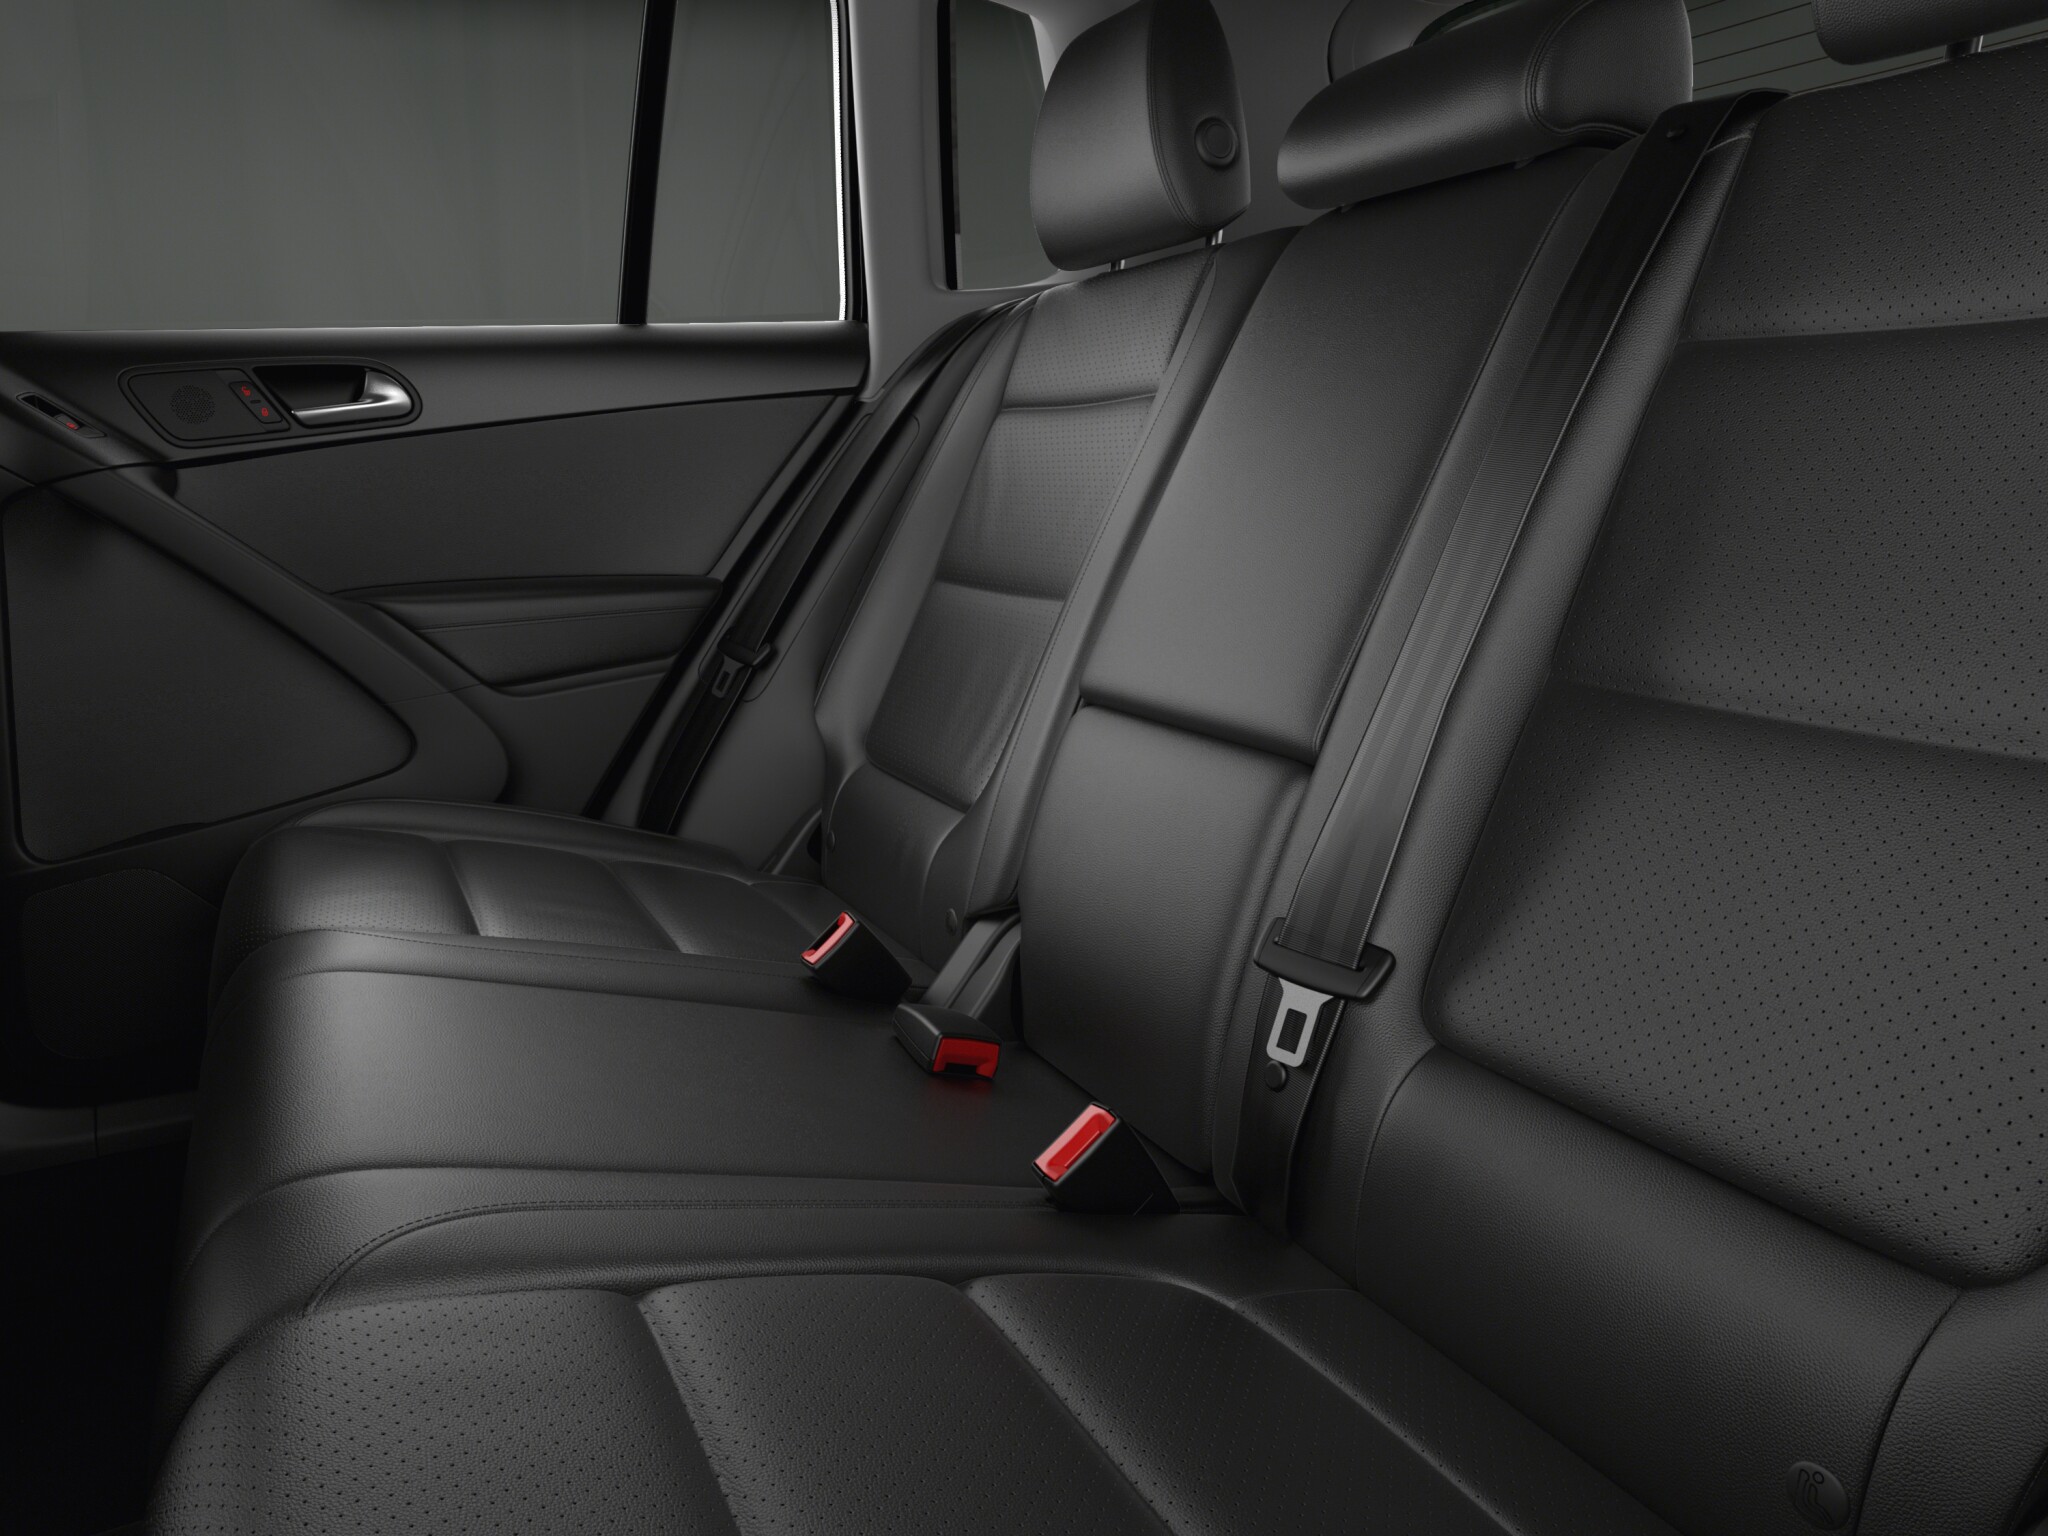 Volkswagen Tiguan Highline Diesel interior rear seat view